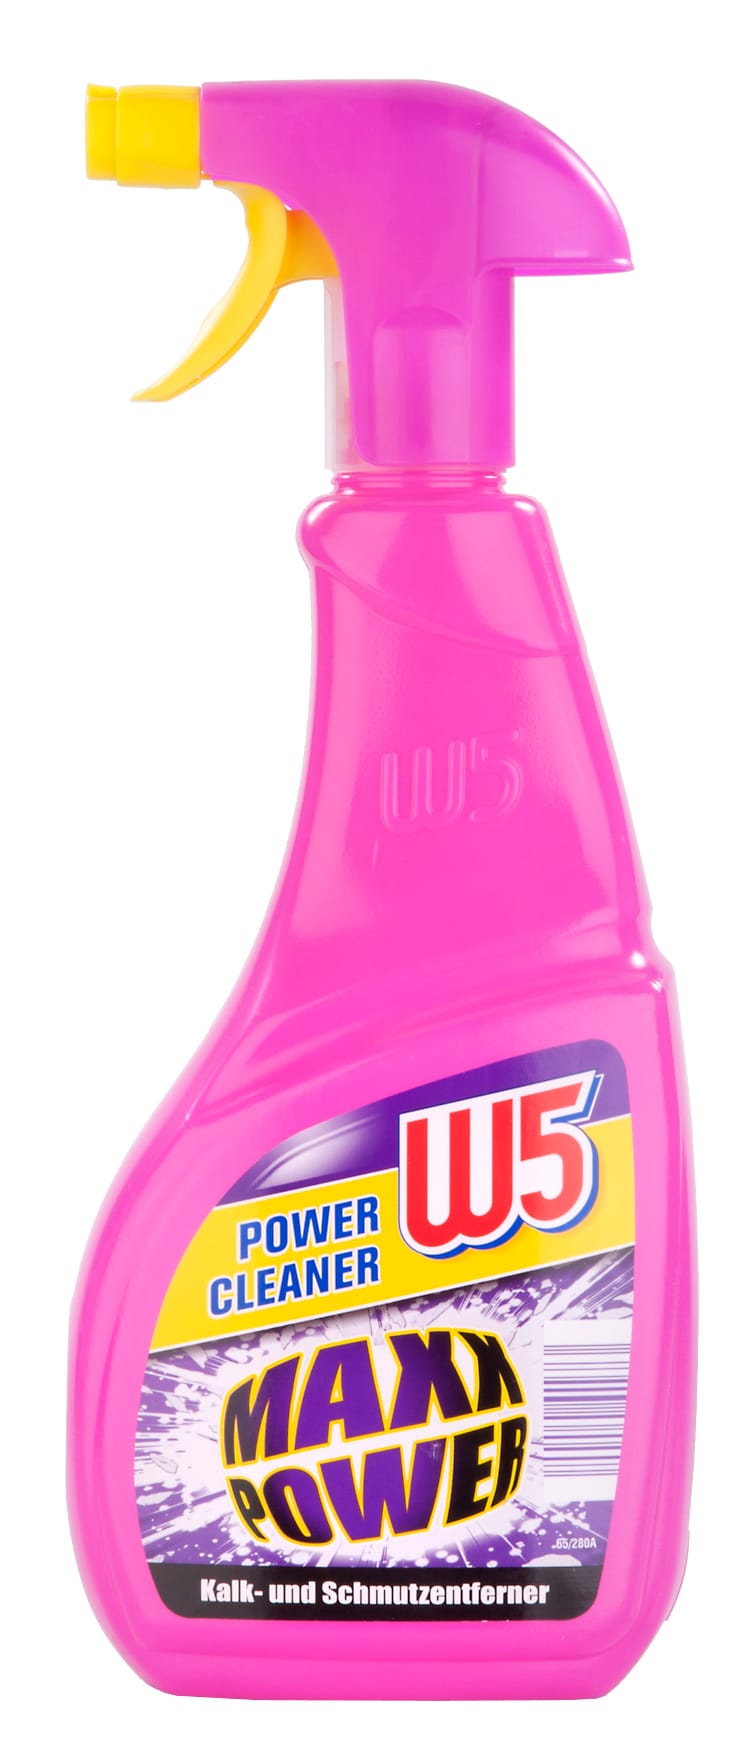 "W5 Power Cleaner Maxx Power" von Lidl (0,27 Cent pro 100 Milliliter) gehört aufgrund seiner gründlichen Reinigungsleistung zu den besten Produkten im Test. Der Kraftreiniger erhielt die Note "Gut" (1,8).